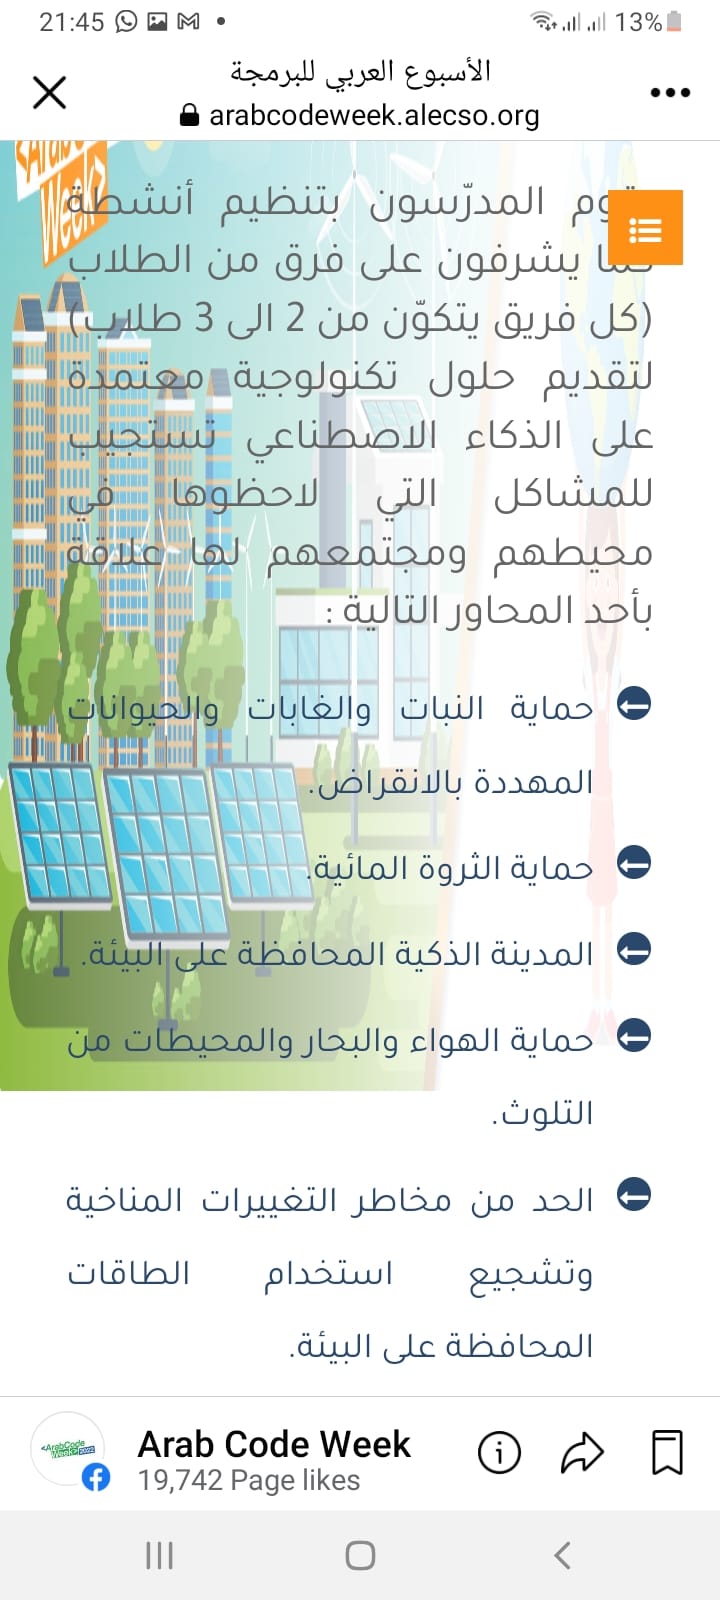 الأسبوع العربي للبرمجة والذكاء الاصطناعي وحماية البيئة